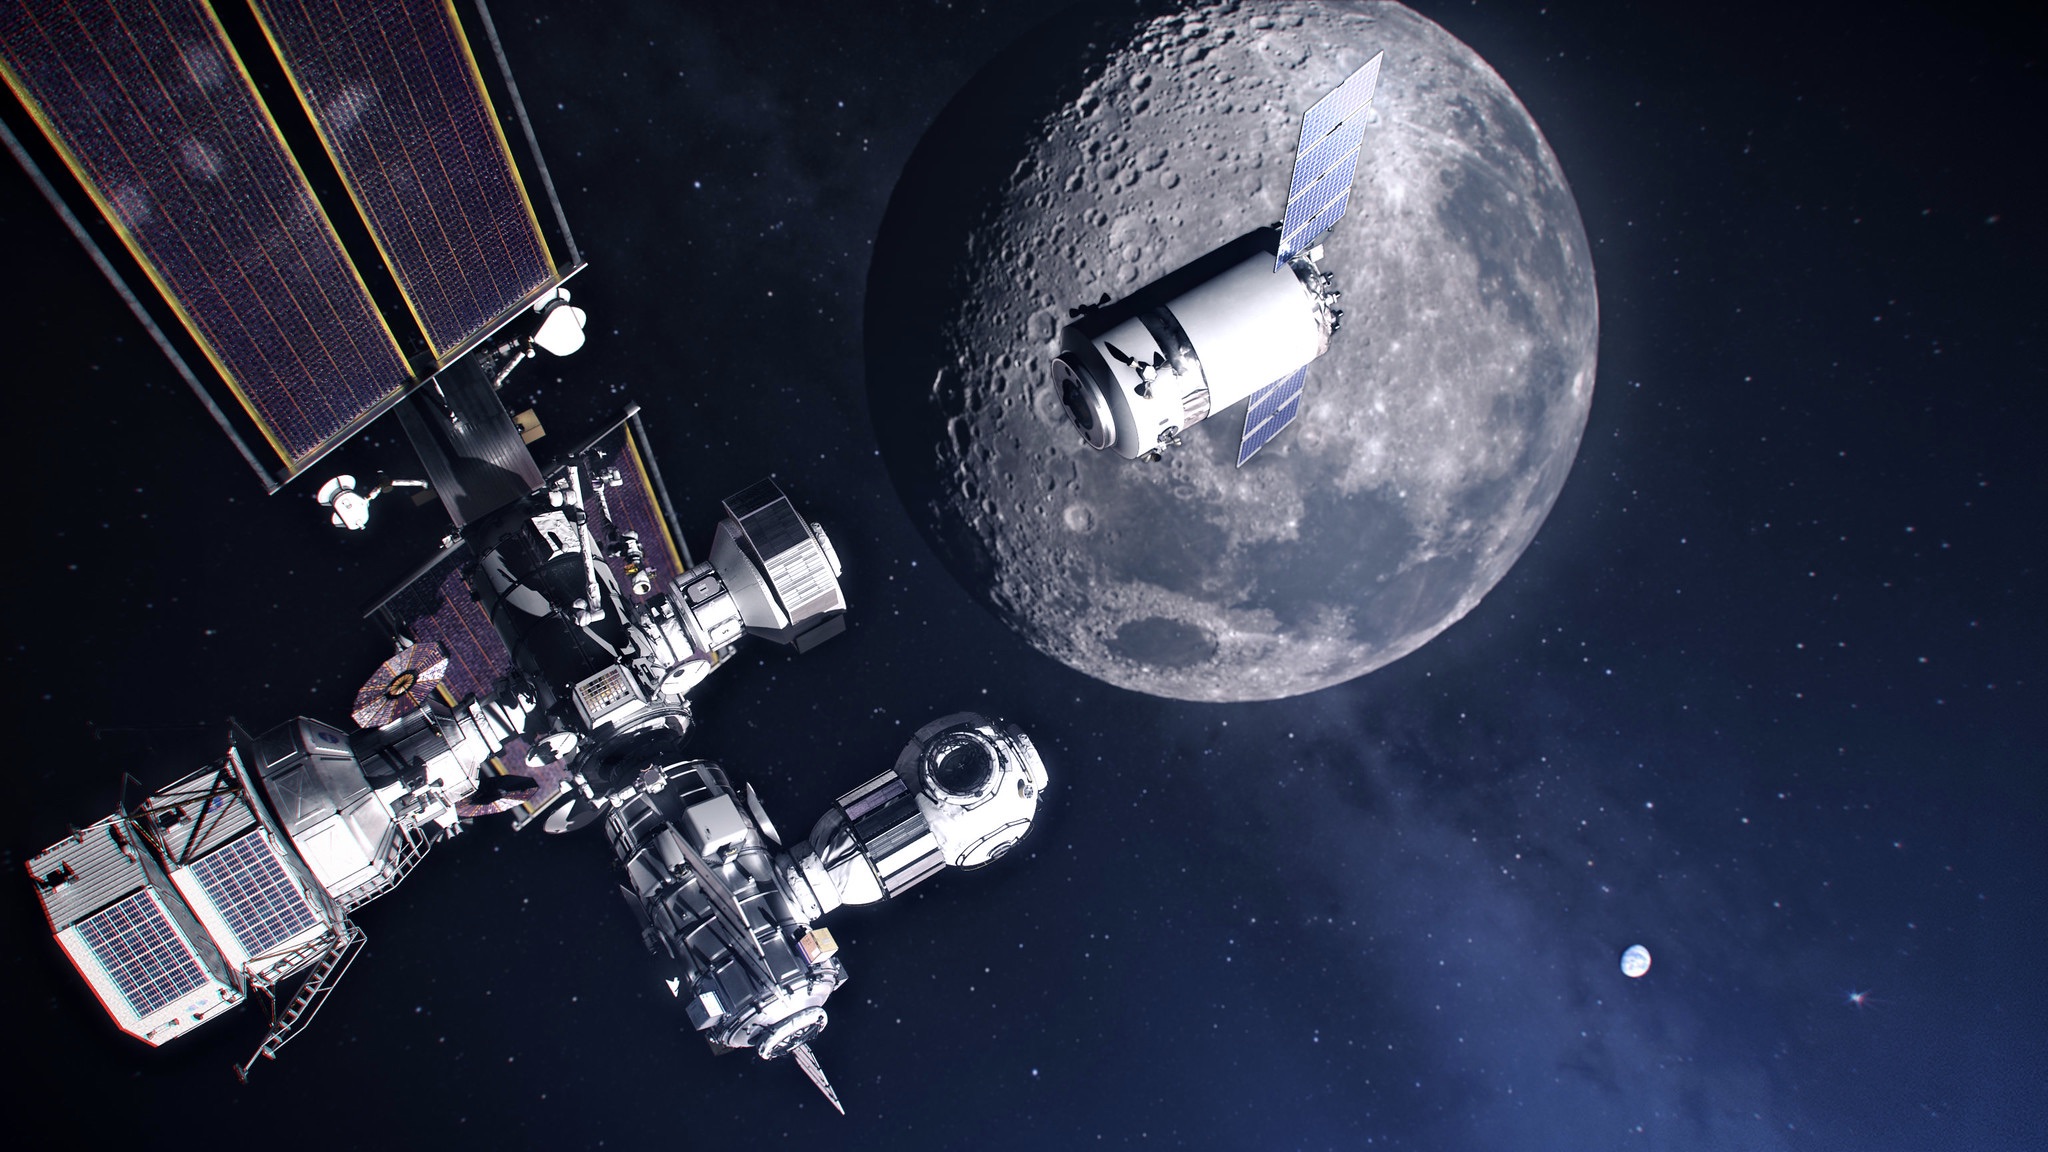 A Lunar Gateway (vagy simán csak Gateway) nevű űrkikötő nem az ISS funkcióit próbálja majd betölteni. Nem lesz állandó legénysége, viszont szervizcsarnokként, hotelként és átjáróházként használhatják majd a Föld–Hold missziók során.